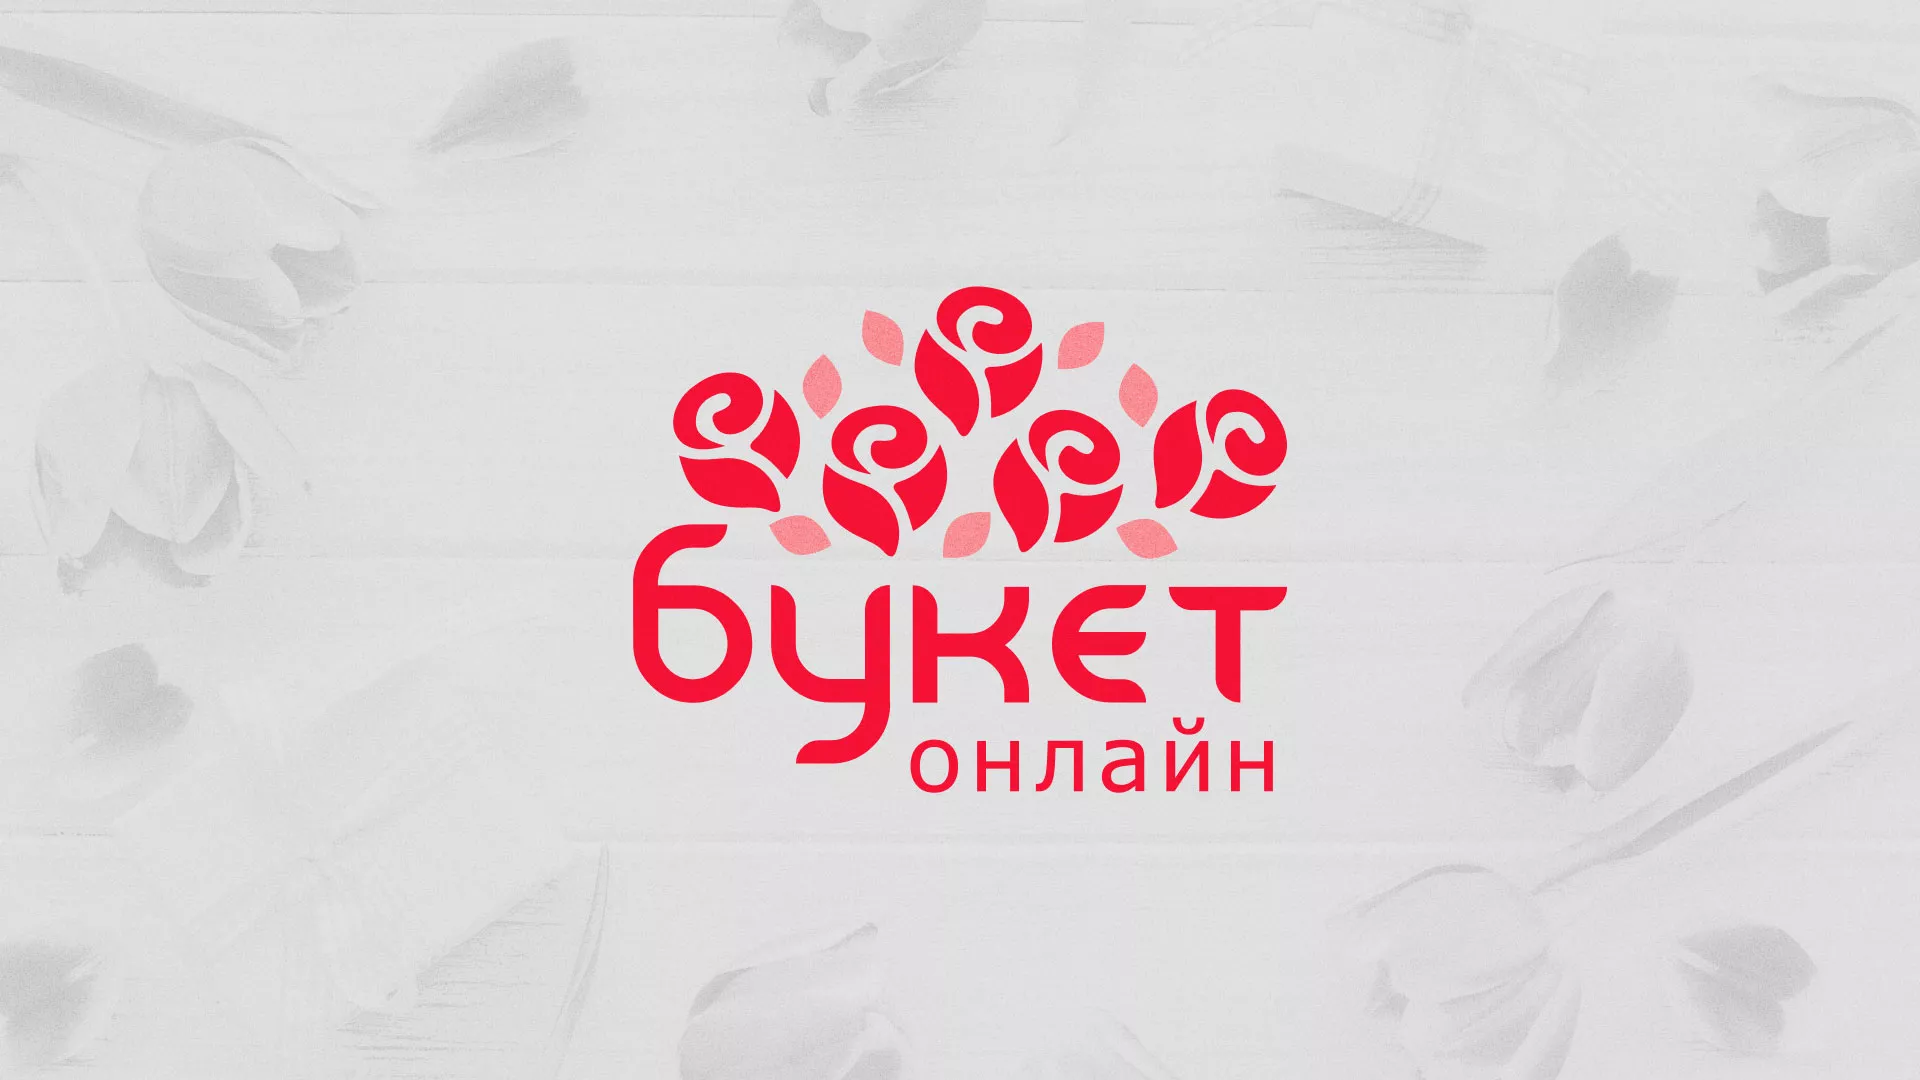 Создание интернет-магазина «Букет-онлайн» по цветам в Карабулаке